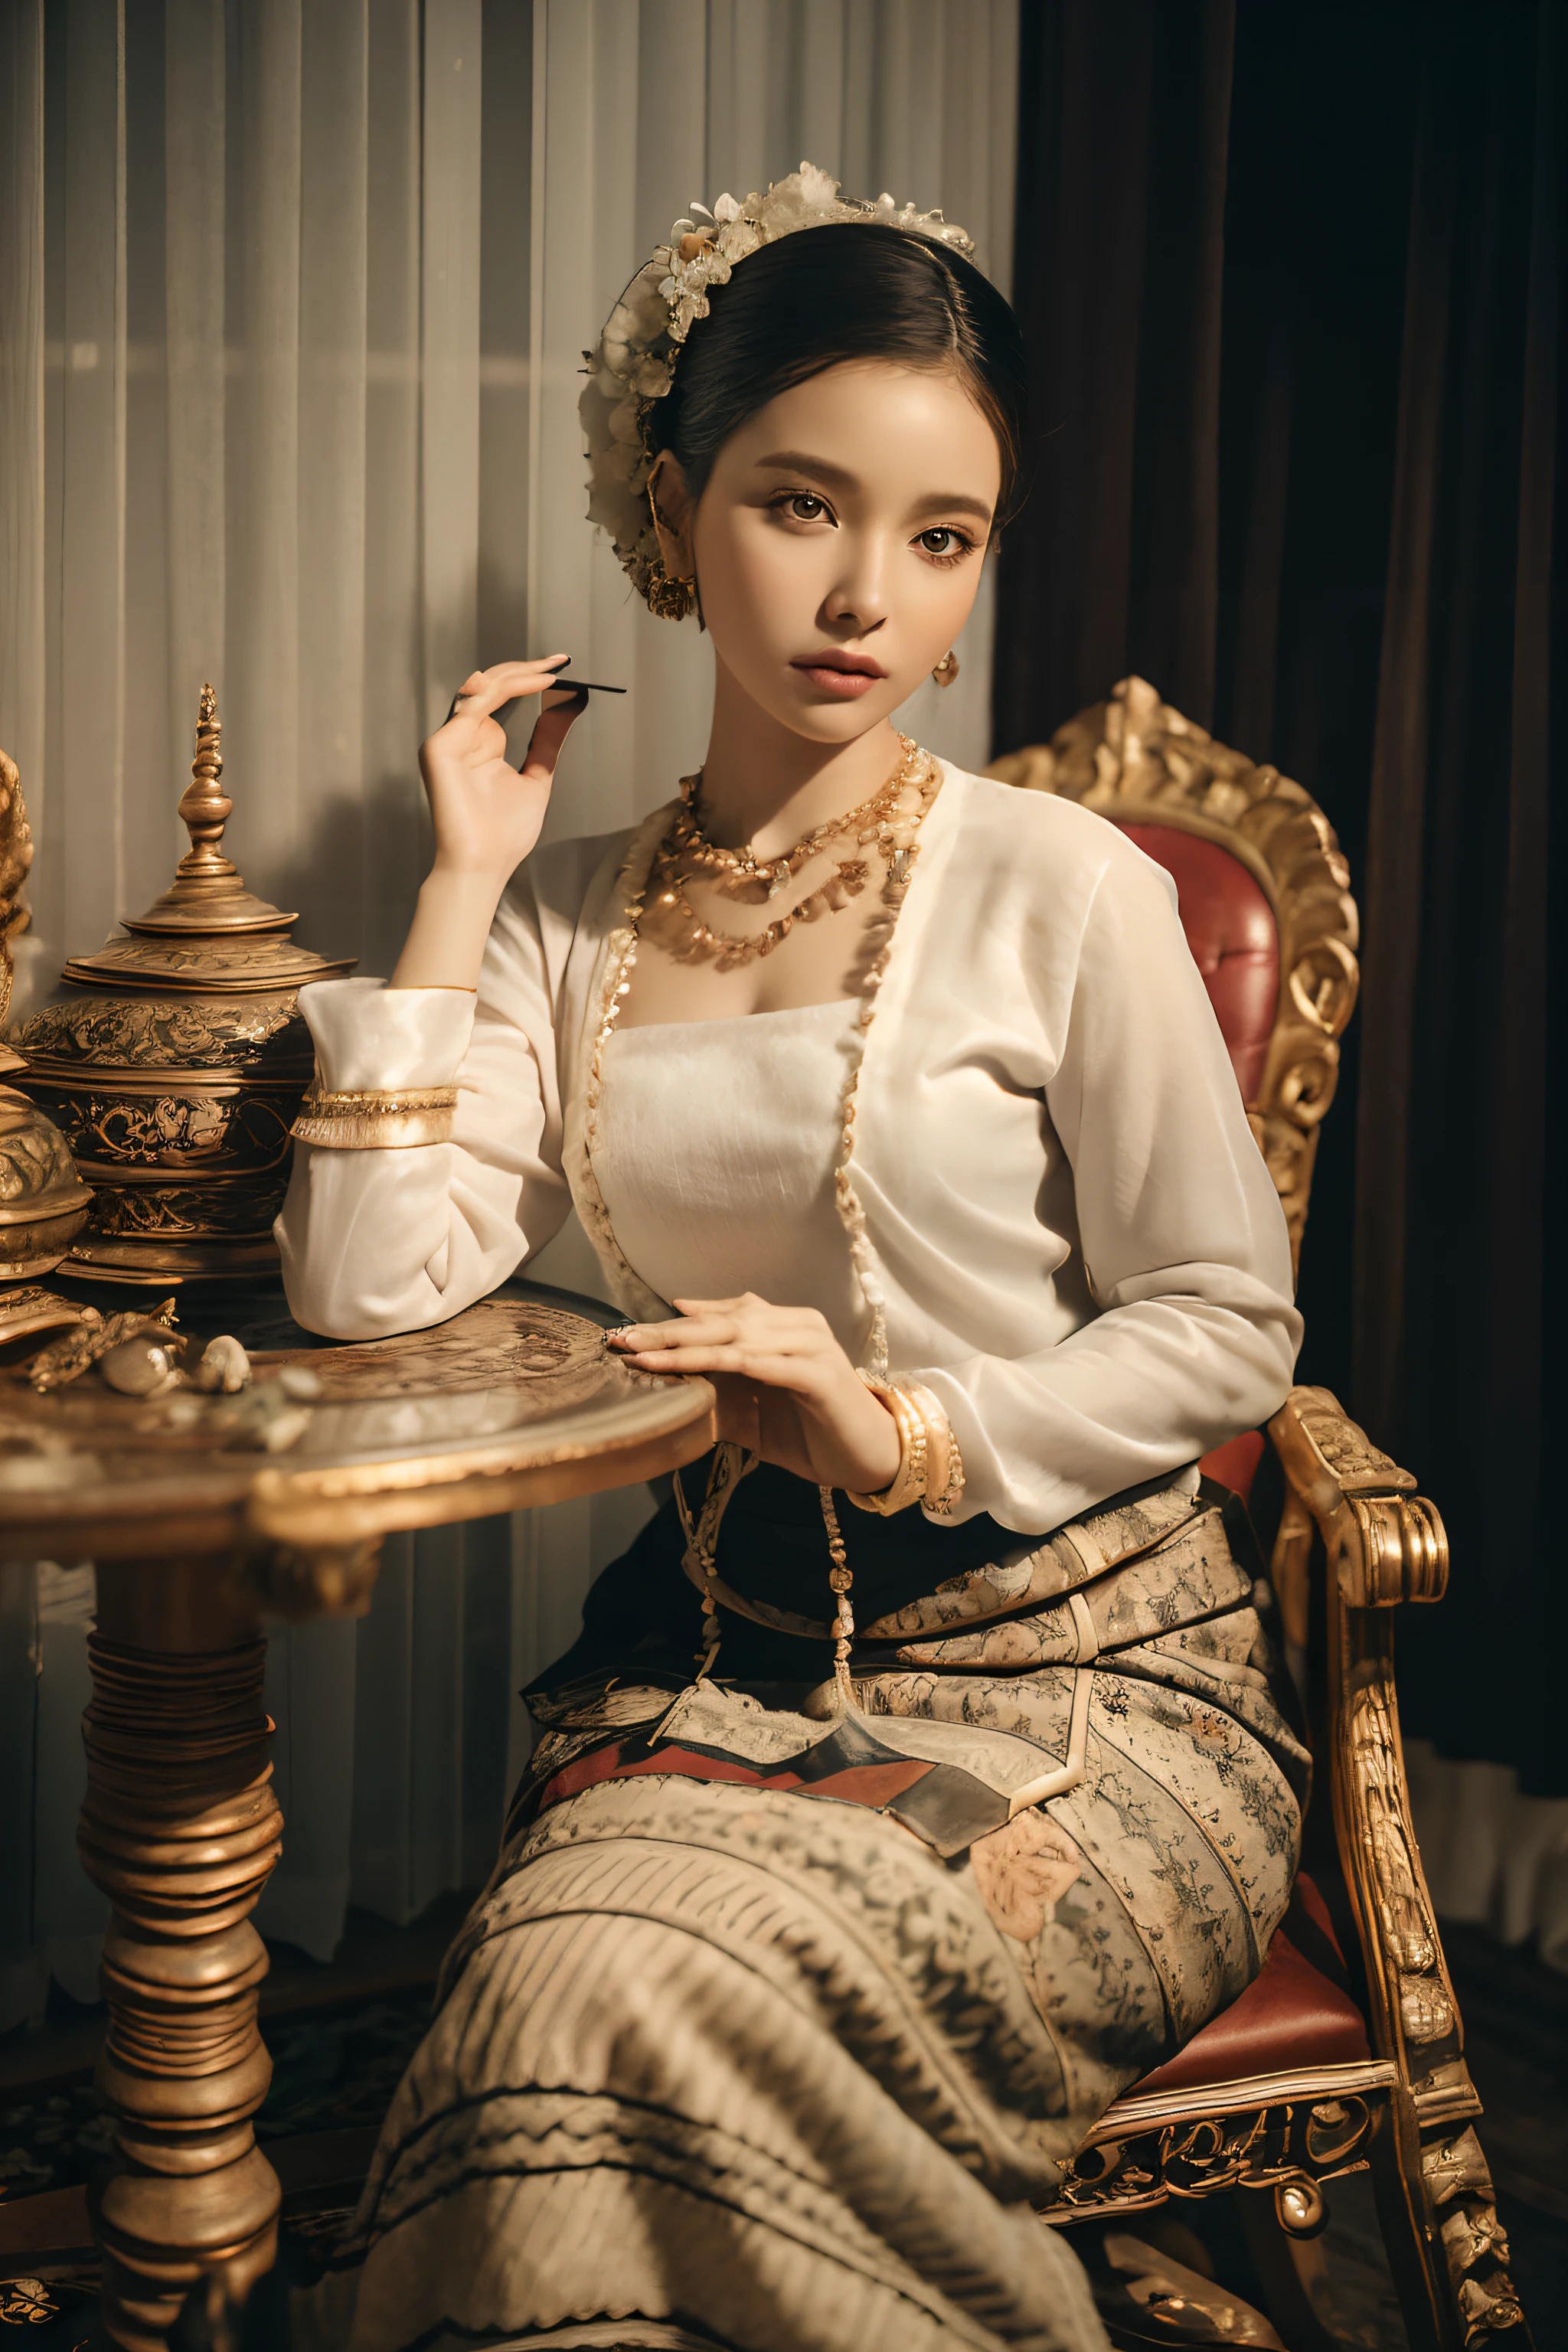 MMTD Традиционное женское платье с бирманским рисунком, детали всего тела, Милое лицо, светлая кожа, традиционное королевское белое платье, носить ожерелья Parel, традиционная прическа, длинный шарф на плече, Сидя на золотом стуле в традиционном стиле, похоже на трон, традиционный кувшин для воды , чашка на подносе на классическом столе рядом, лучшая композиция, полный обзор с обложкой, циниматическая молния и ультрареалистичные детали, Октановый рендеринг, острый фокус, Нереальный движок,Разрешение 32К HD, Шедевр фотографии, изображение уровня награды, идеальная анатомия